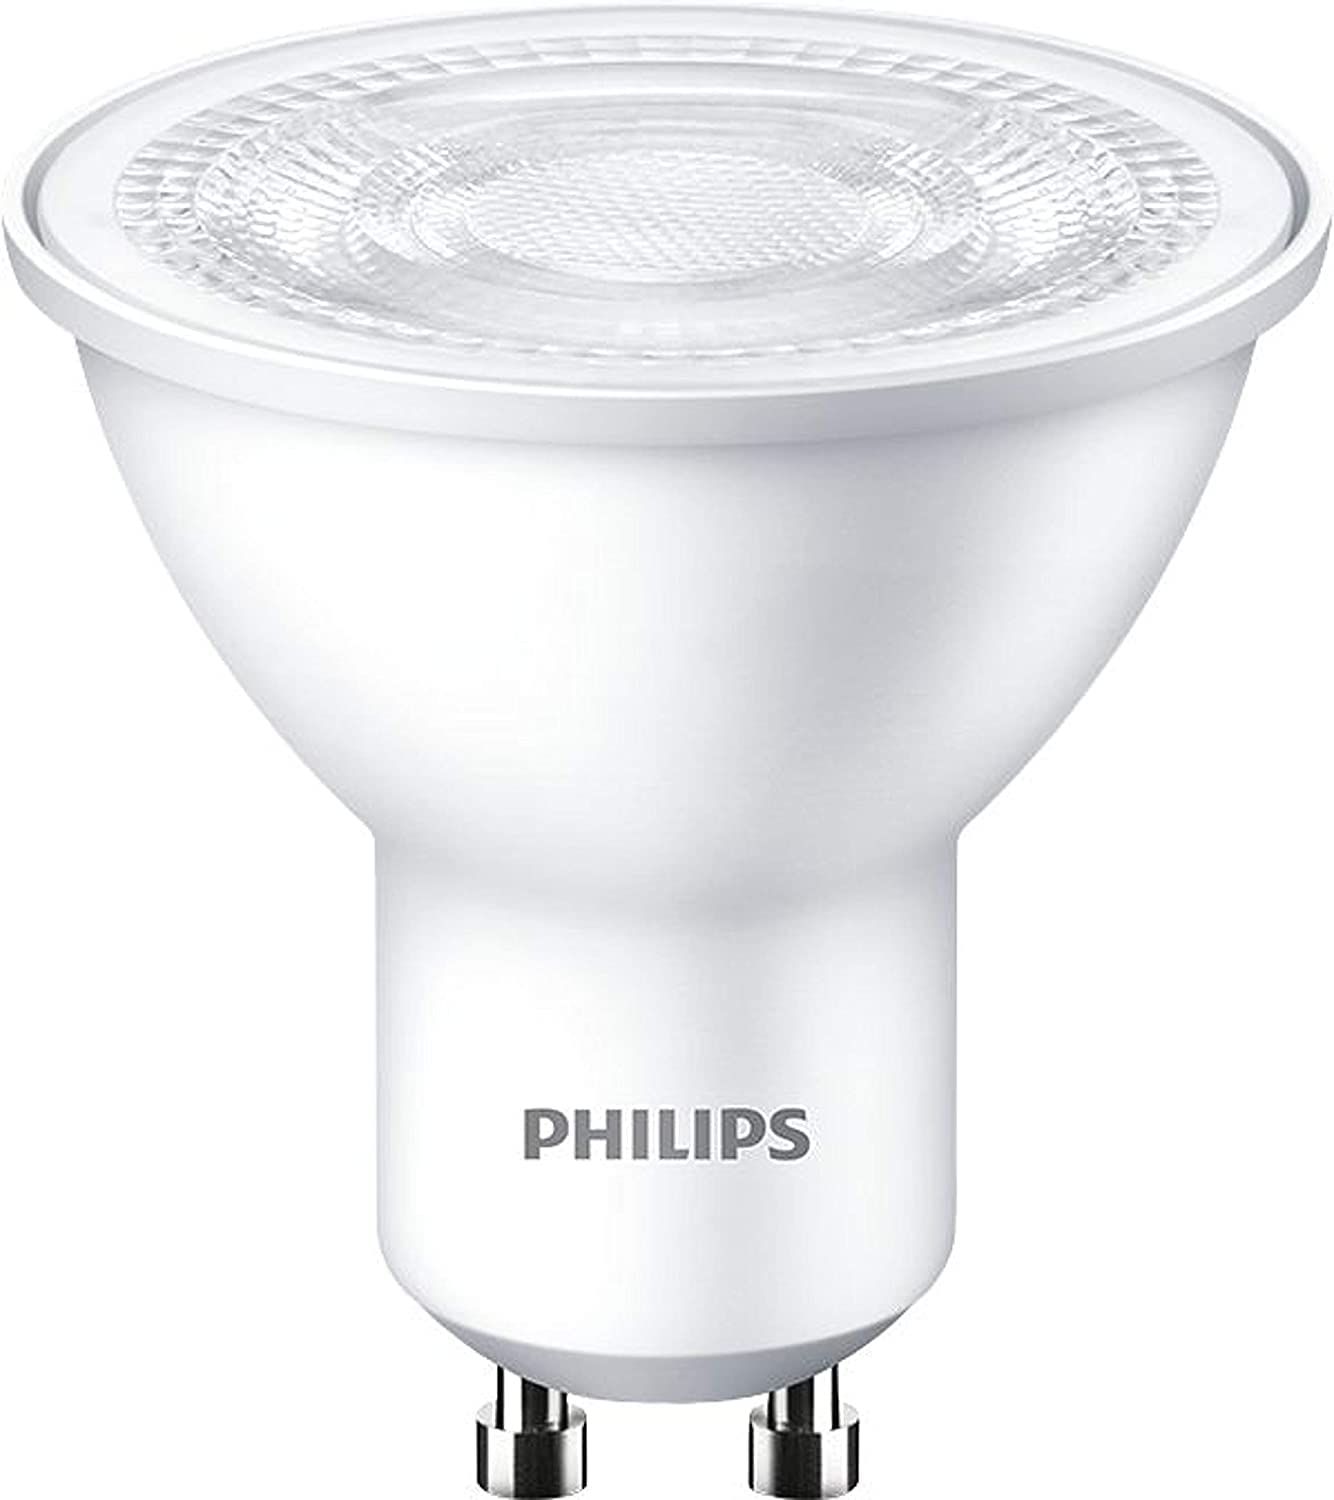 Philips LED GU10 4.7W = 50W 345lm Refklektor 36° 230V Warmweiß 2700K